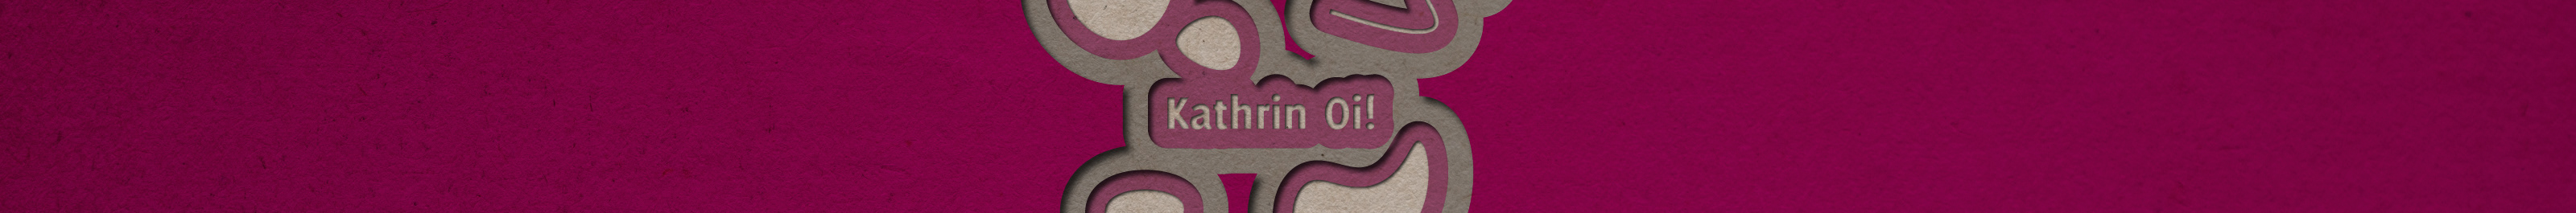 Kathrin Oi! 的个人资料横幅